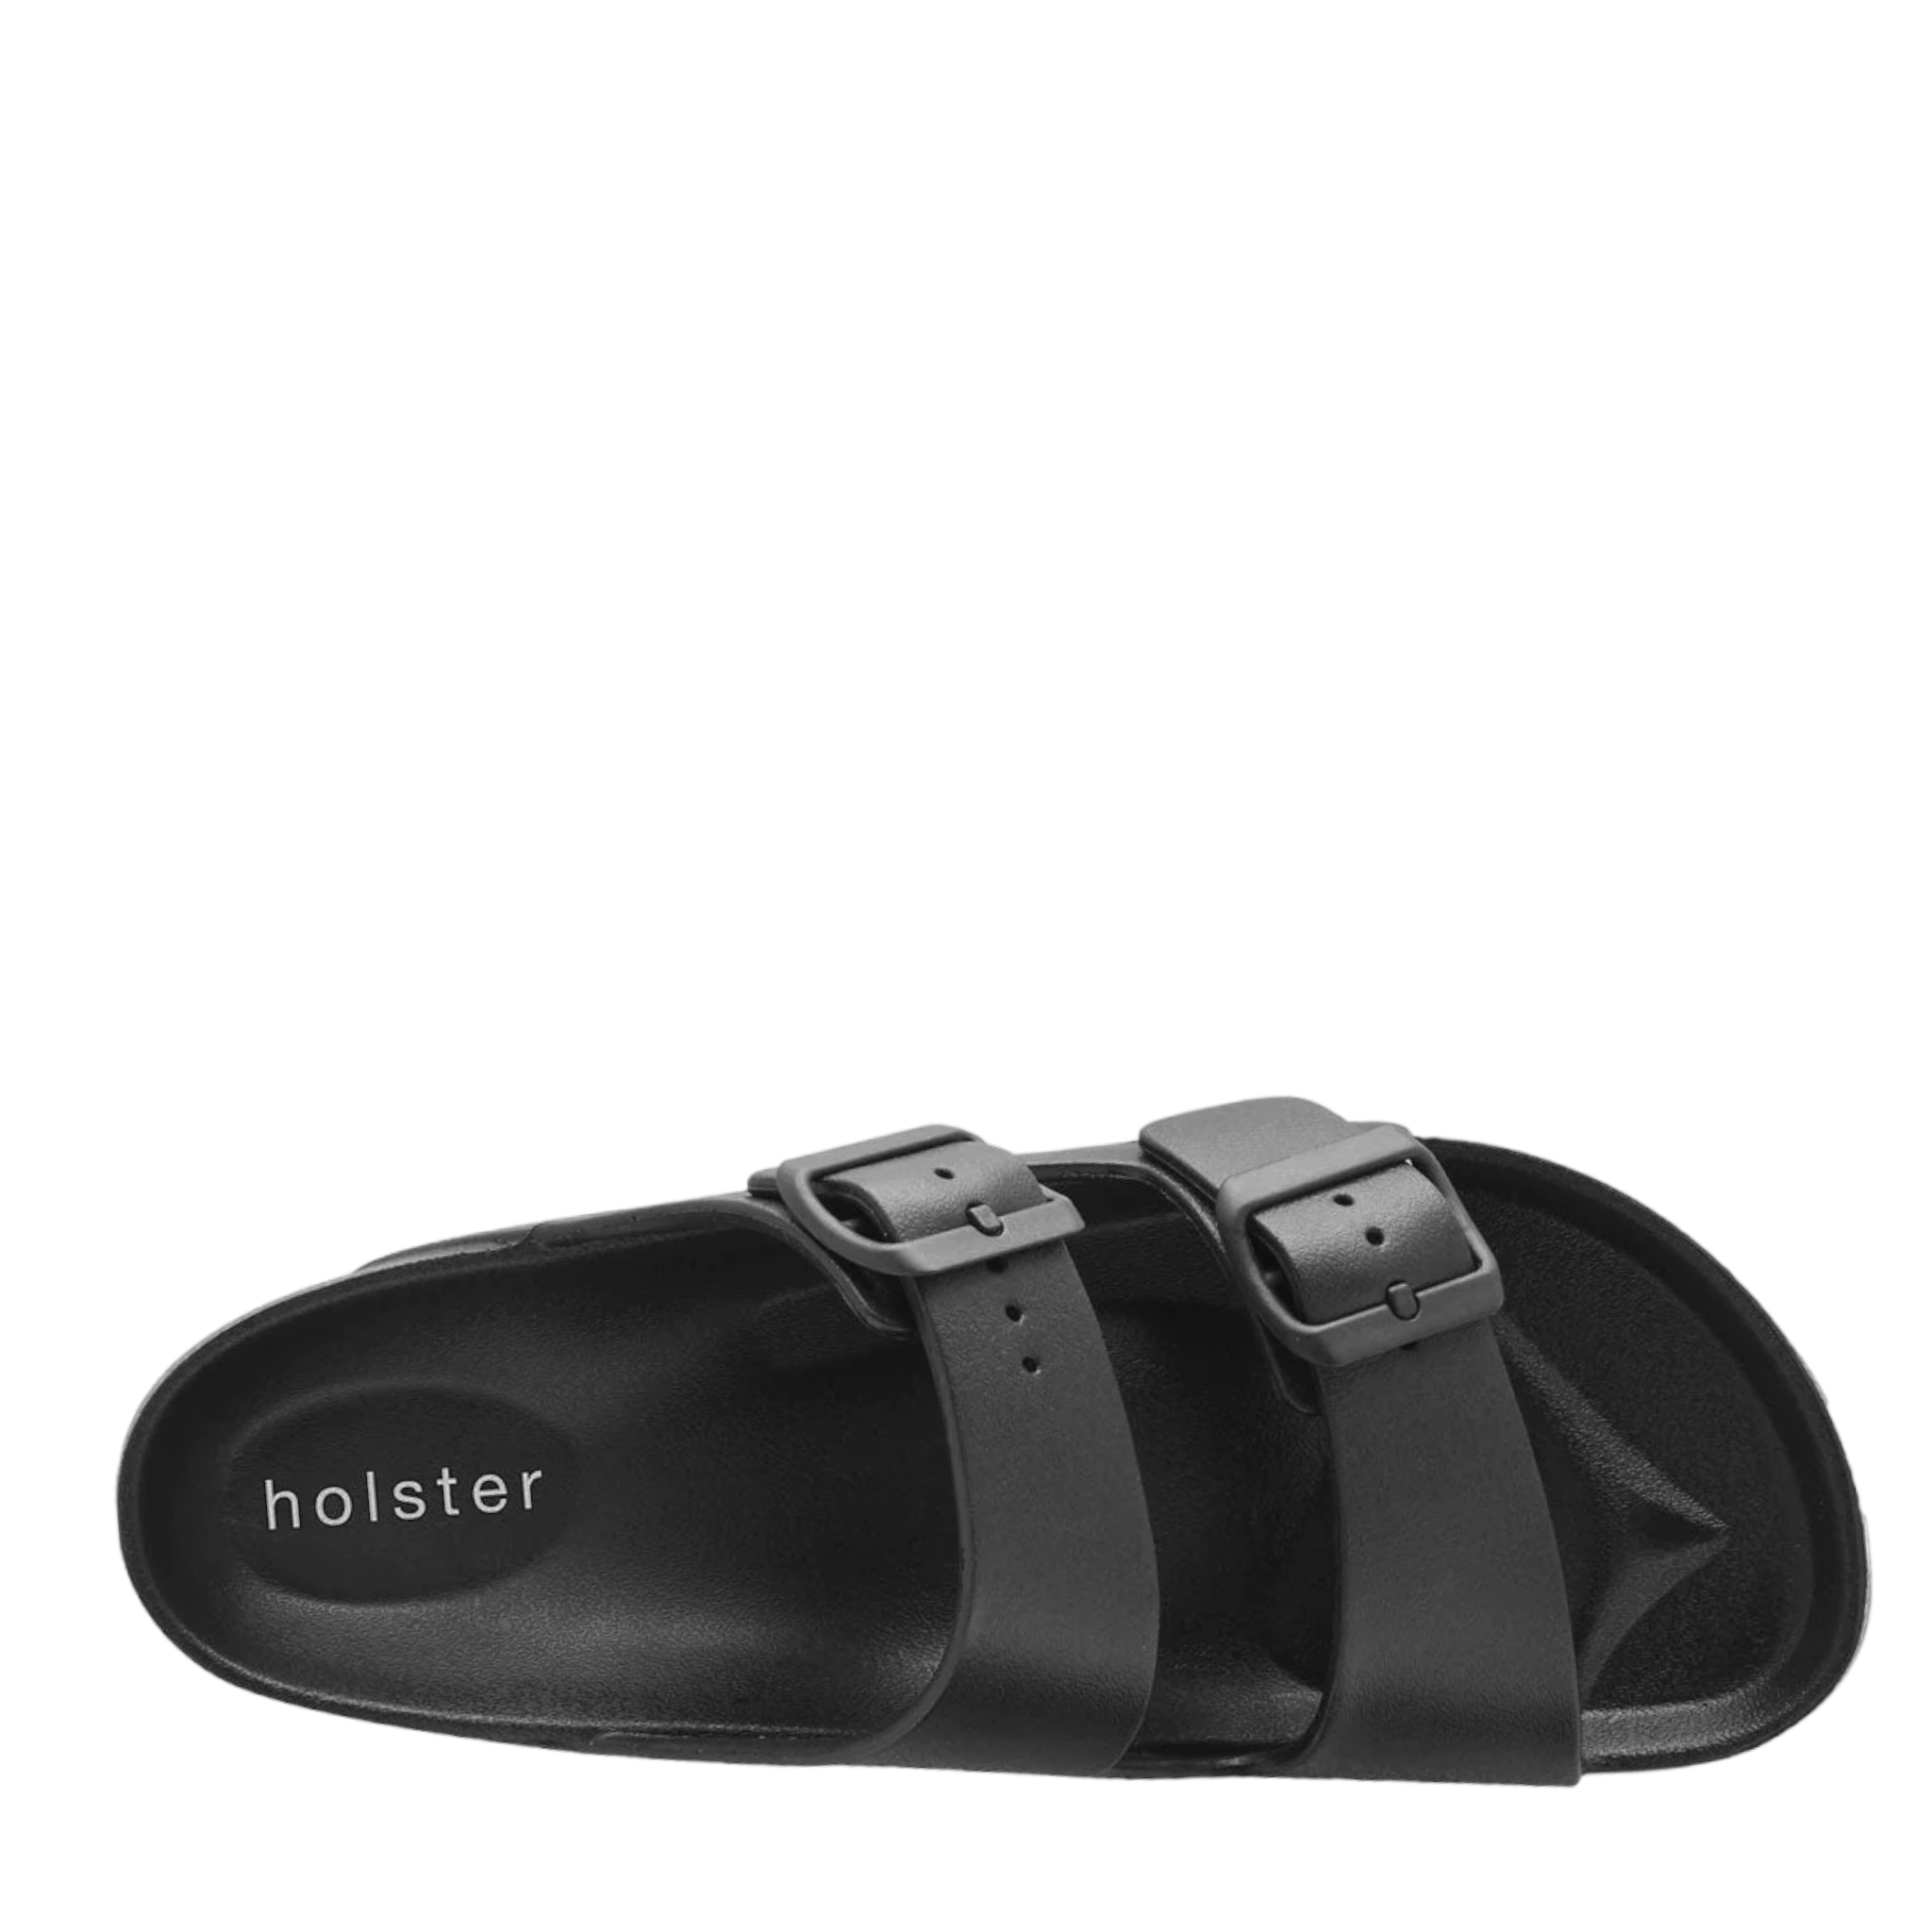 Sundreamer - shoe&amp;me - Holster - Slide - Sandals, Slides/Scuffs, Summer, Vegan, Womens